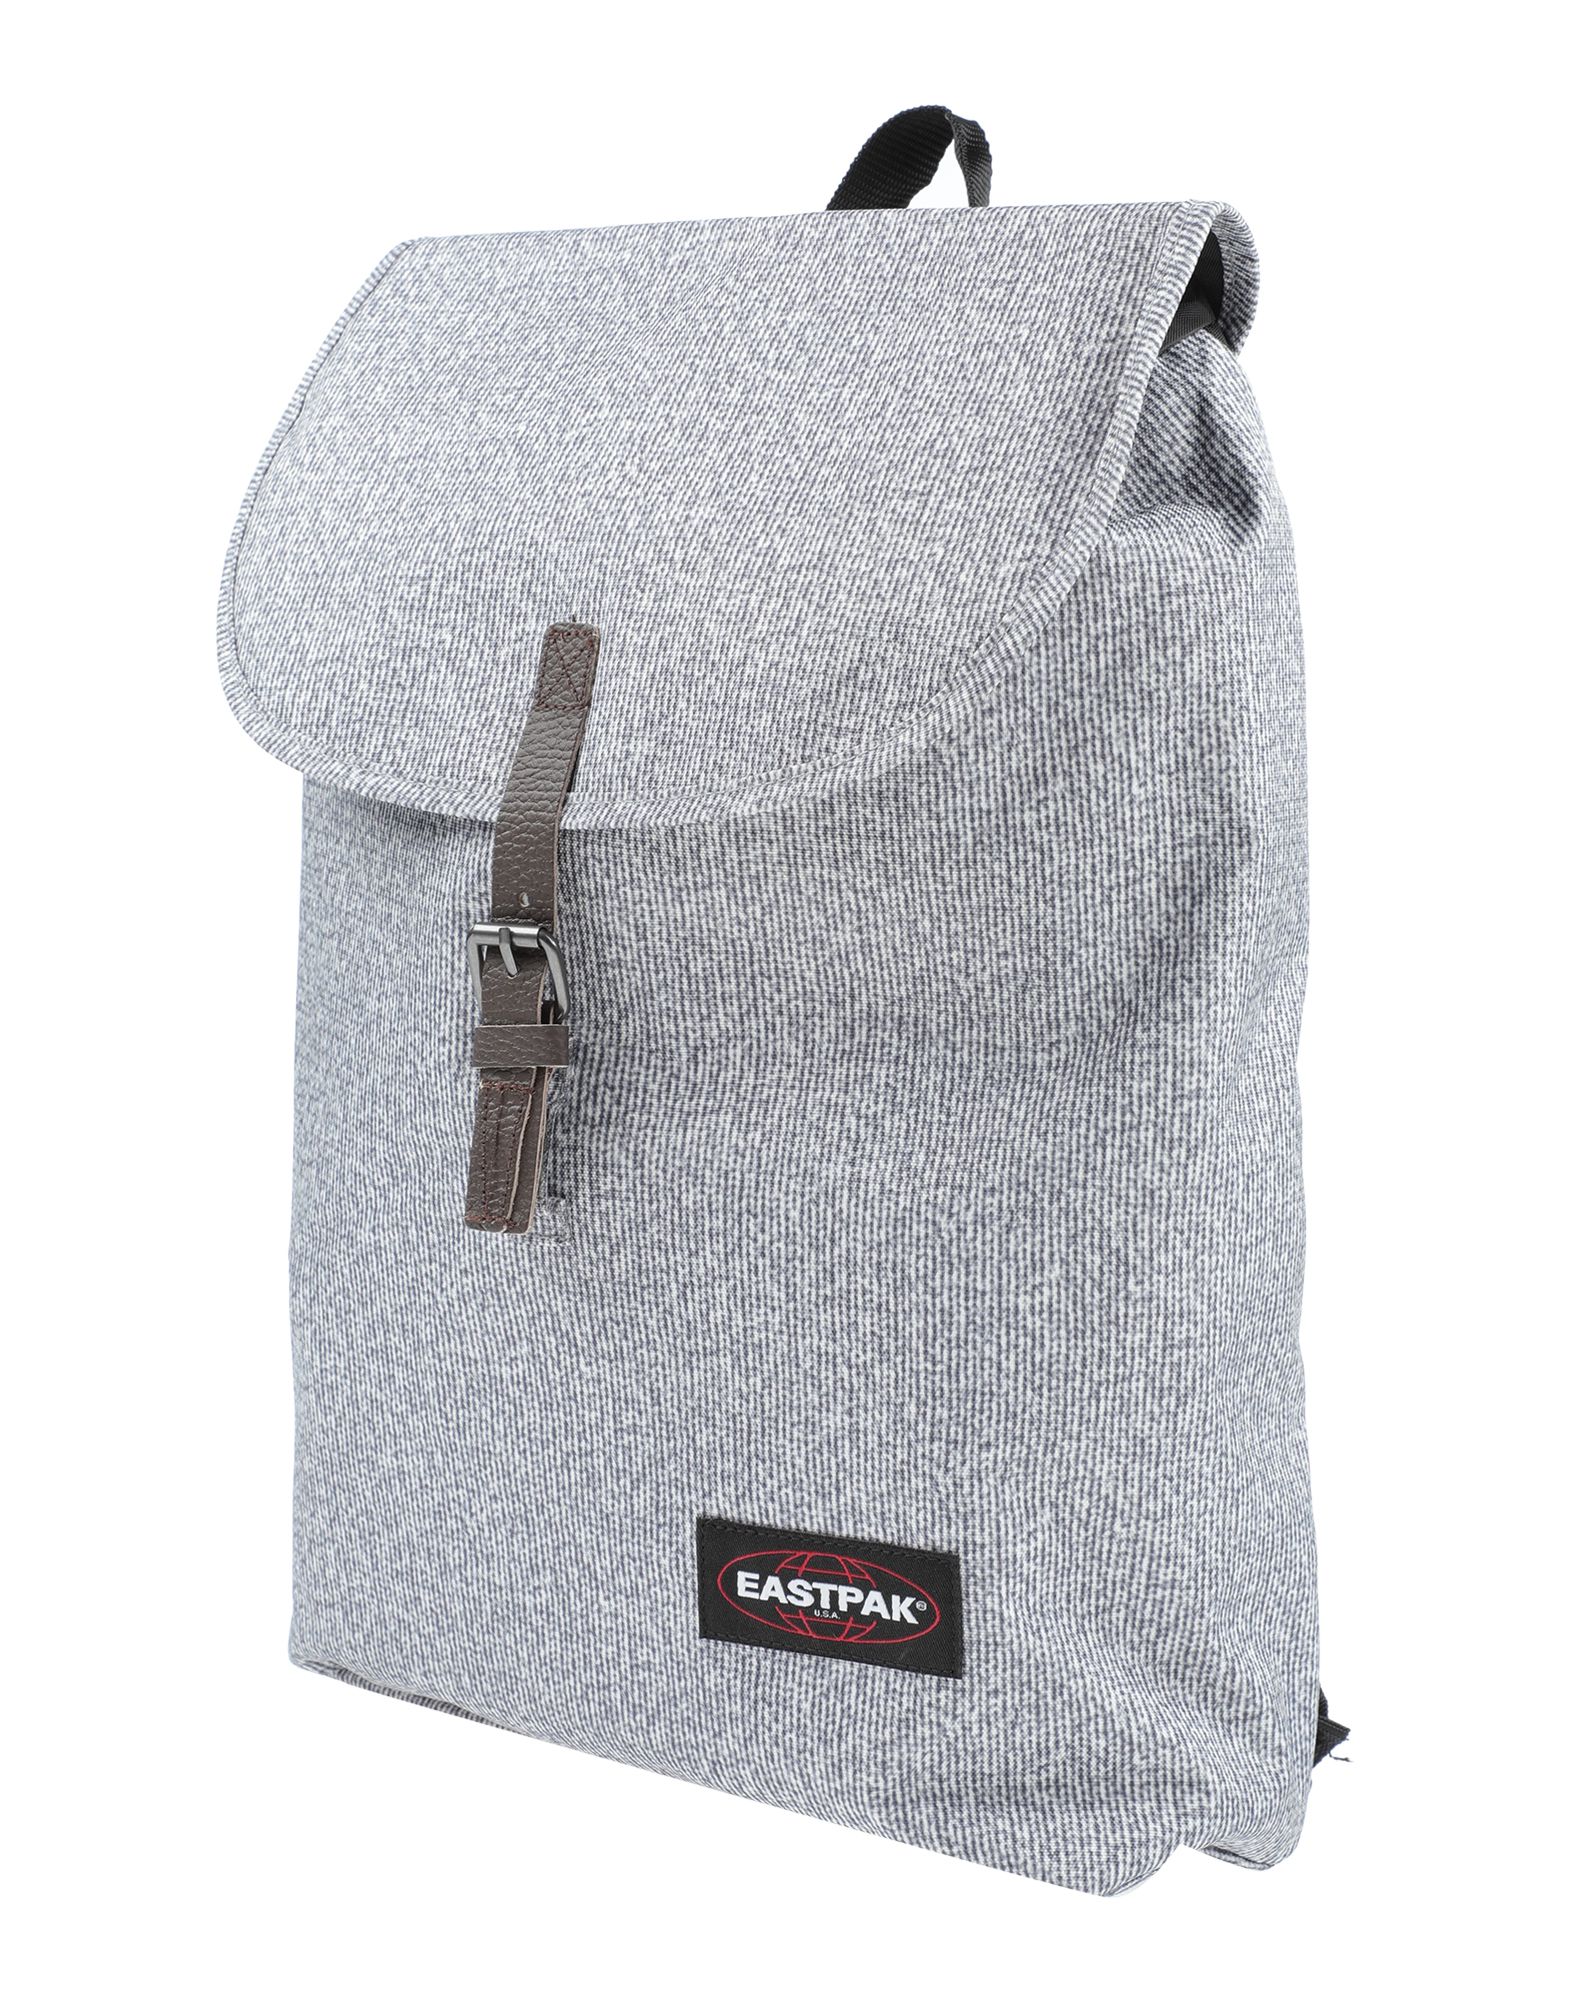 EASTPAK Backpacks & Fanny packs - Item 45516700